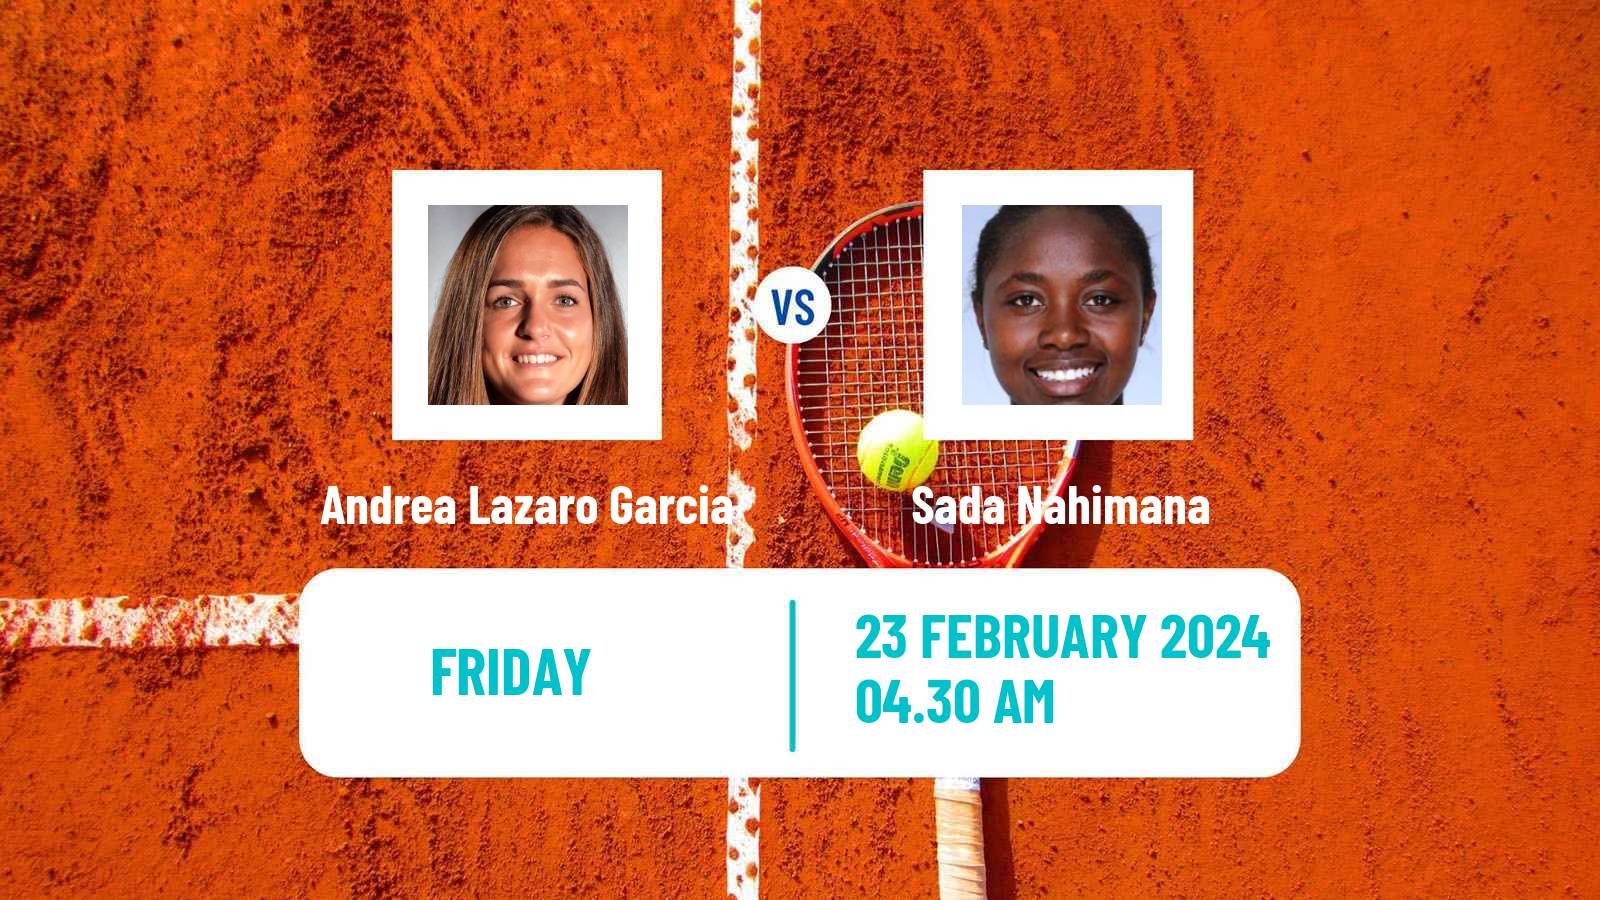 Tennis ITF W35 Hammamet 2 Women Andrea Lazaro Garcia - Sada Nahimana